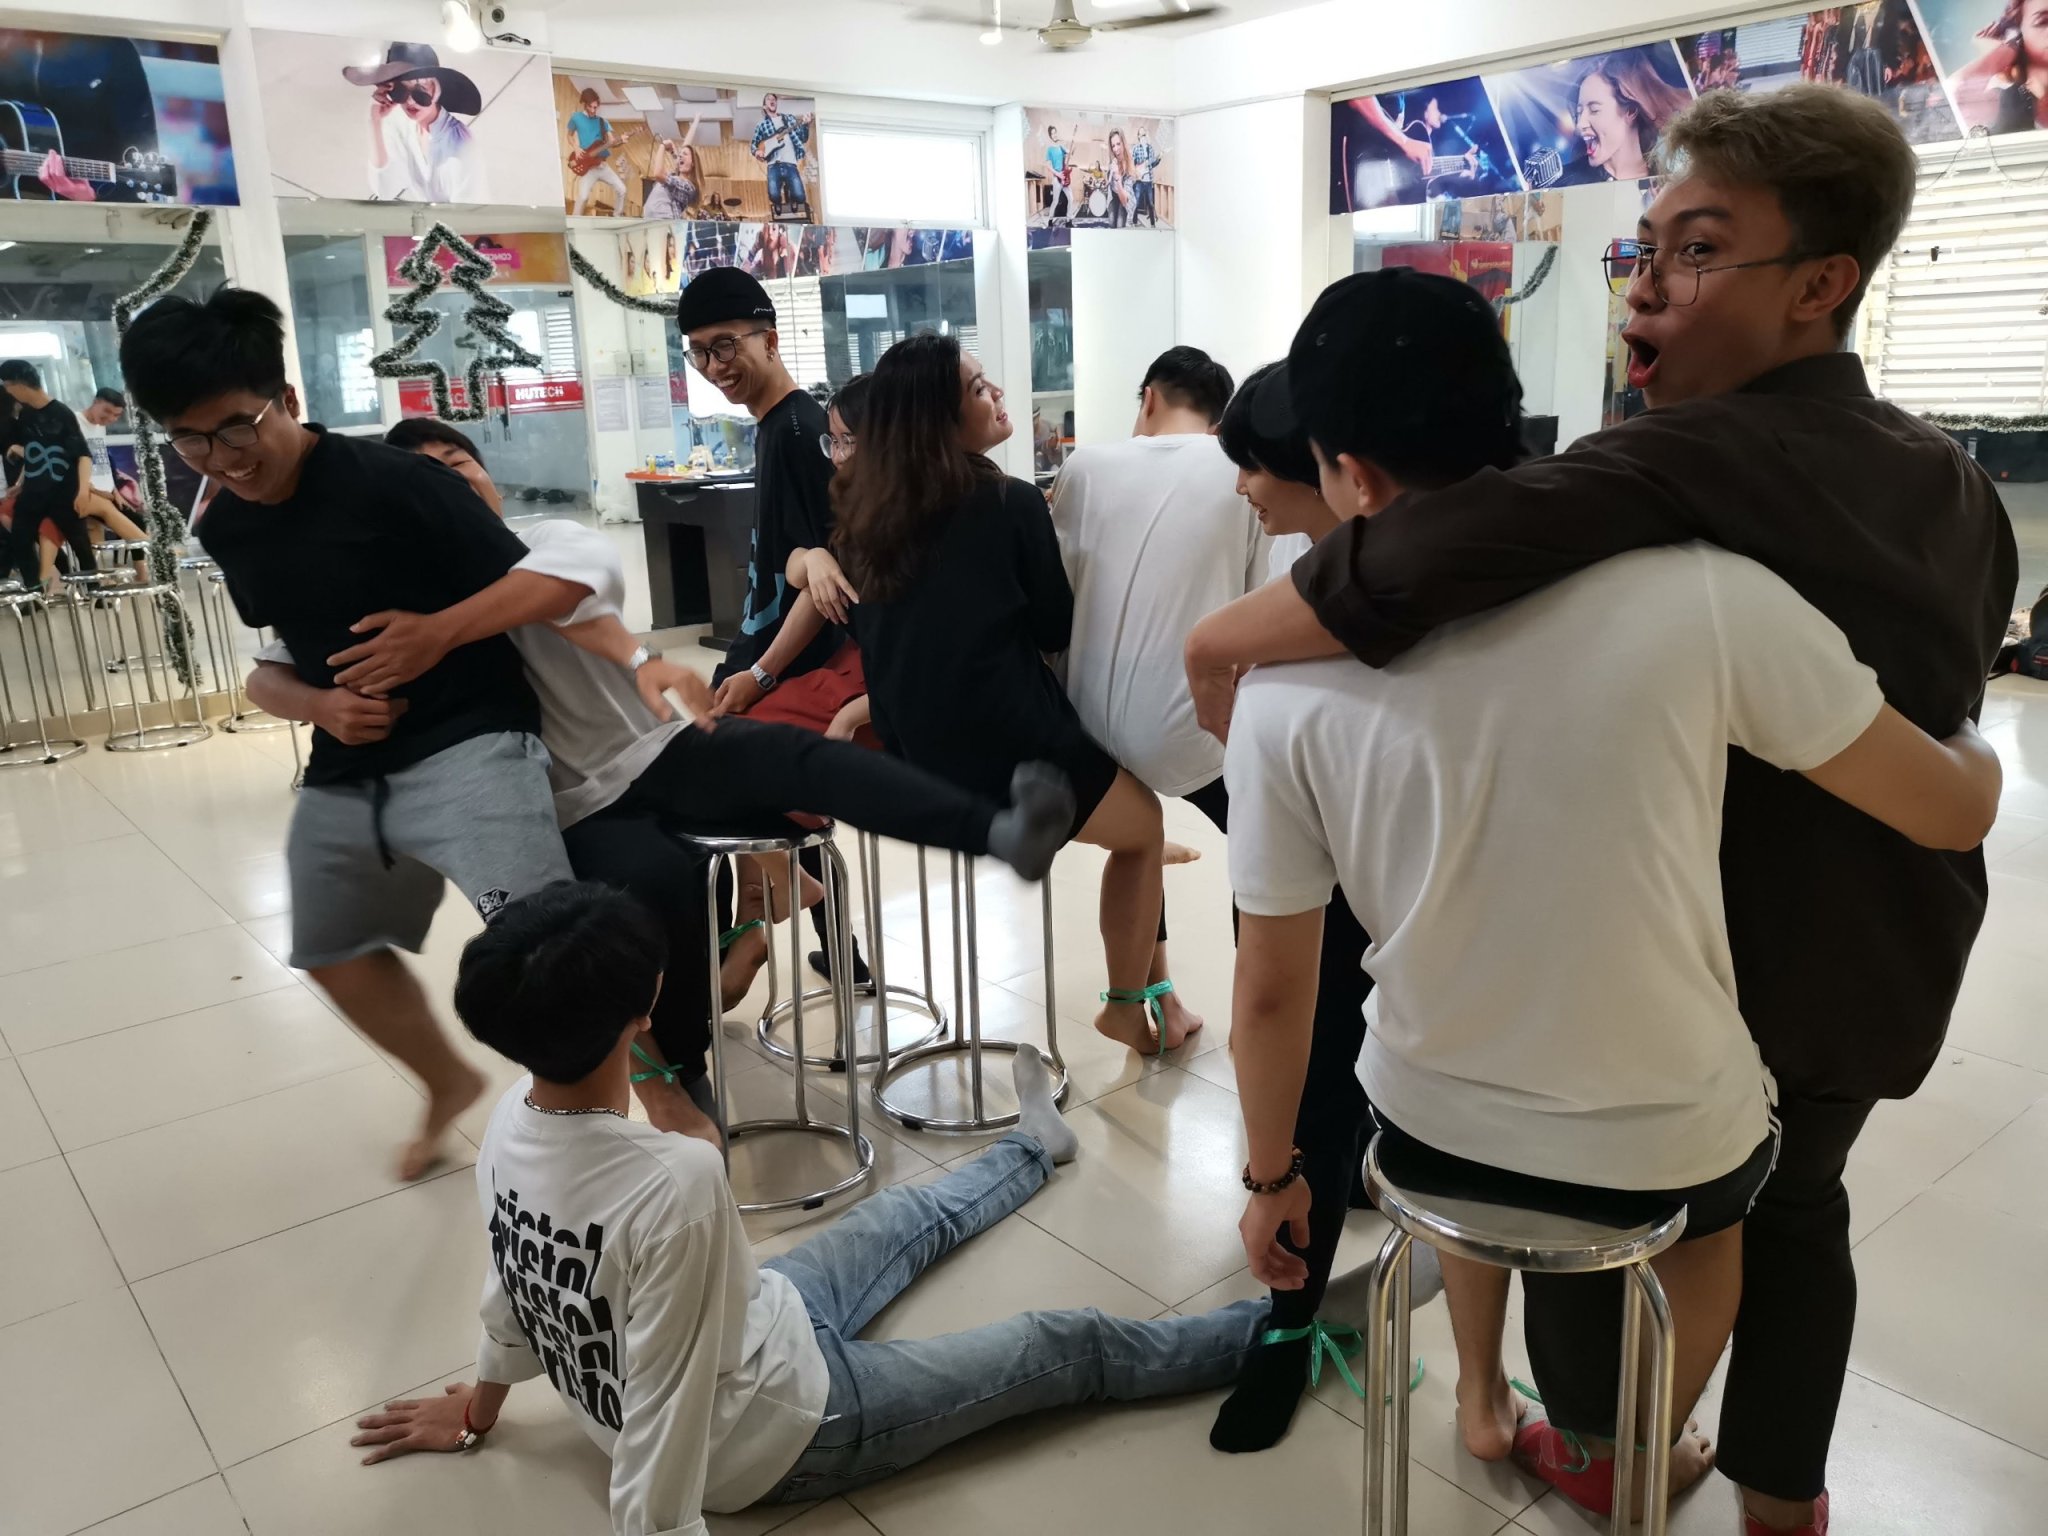 [AHIHI] Vui nhộn buổi Offline CLB nhảy Life Dance trước khi các thành viên về quê nghỉ tết 11